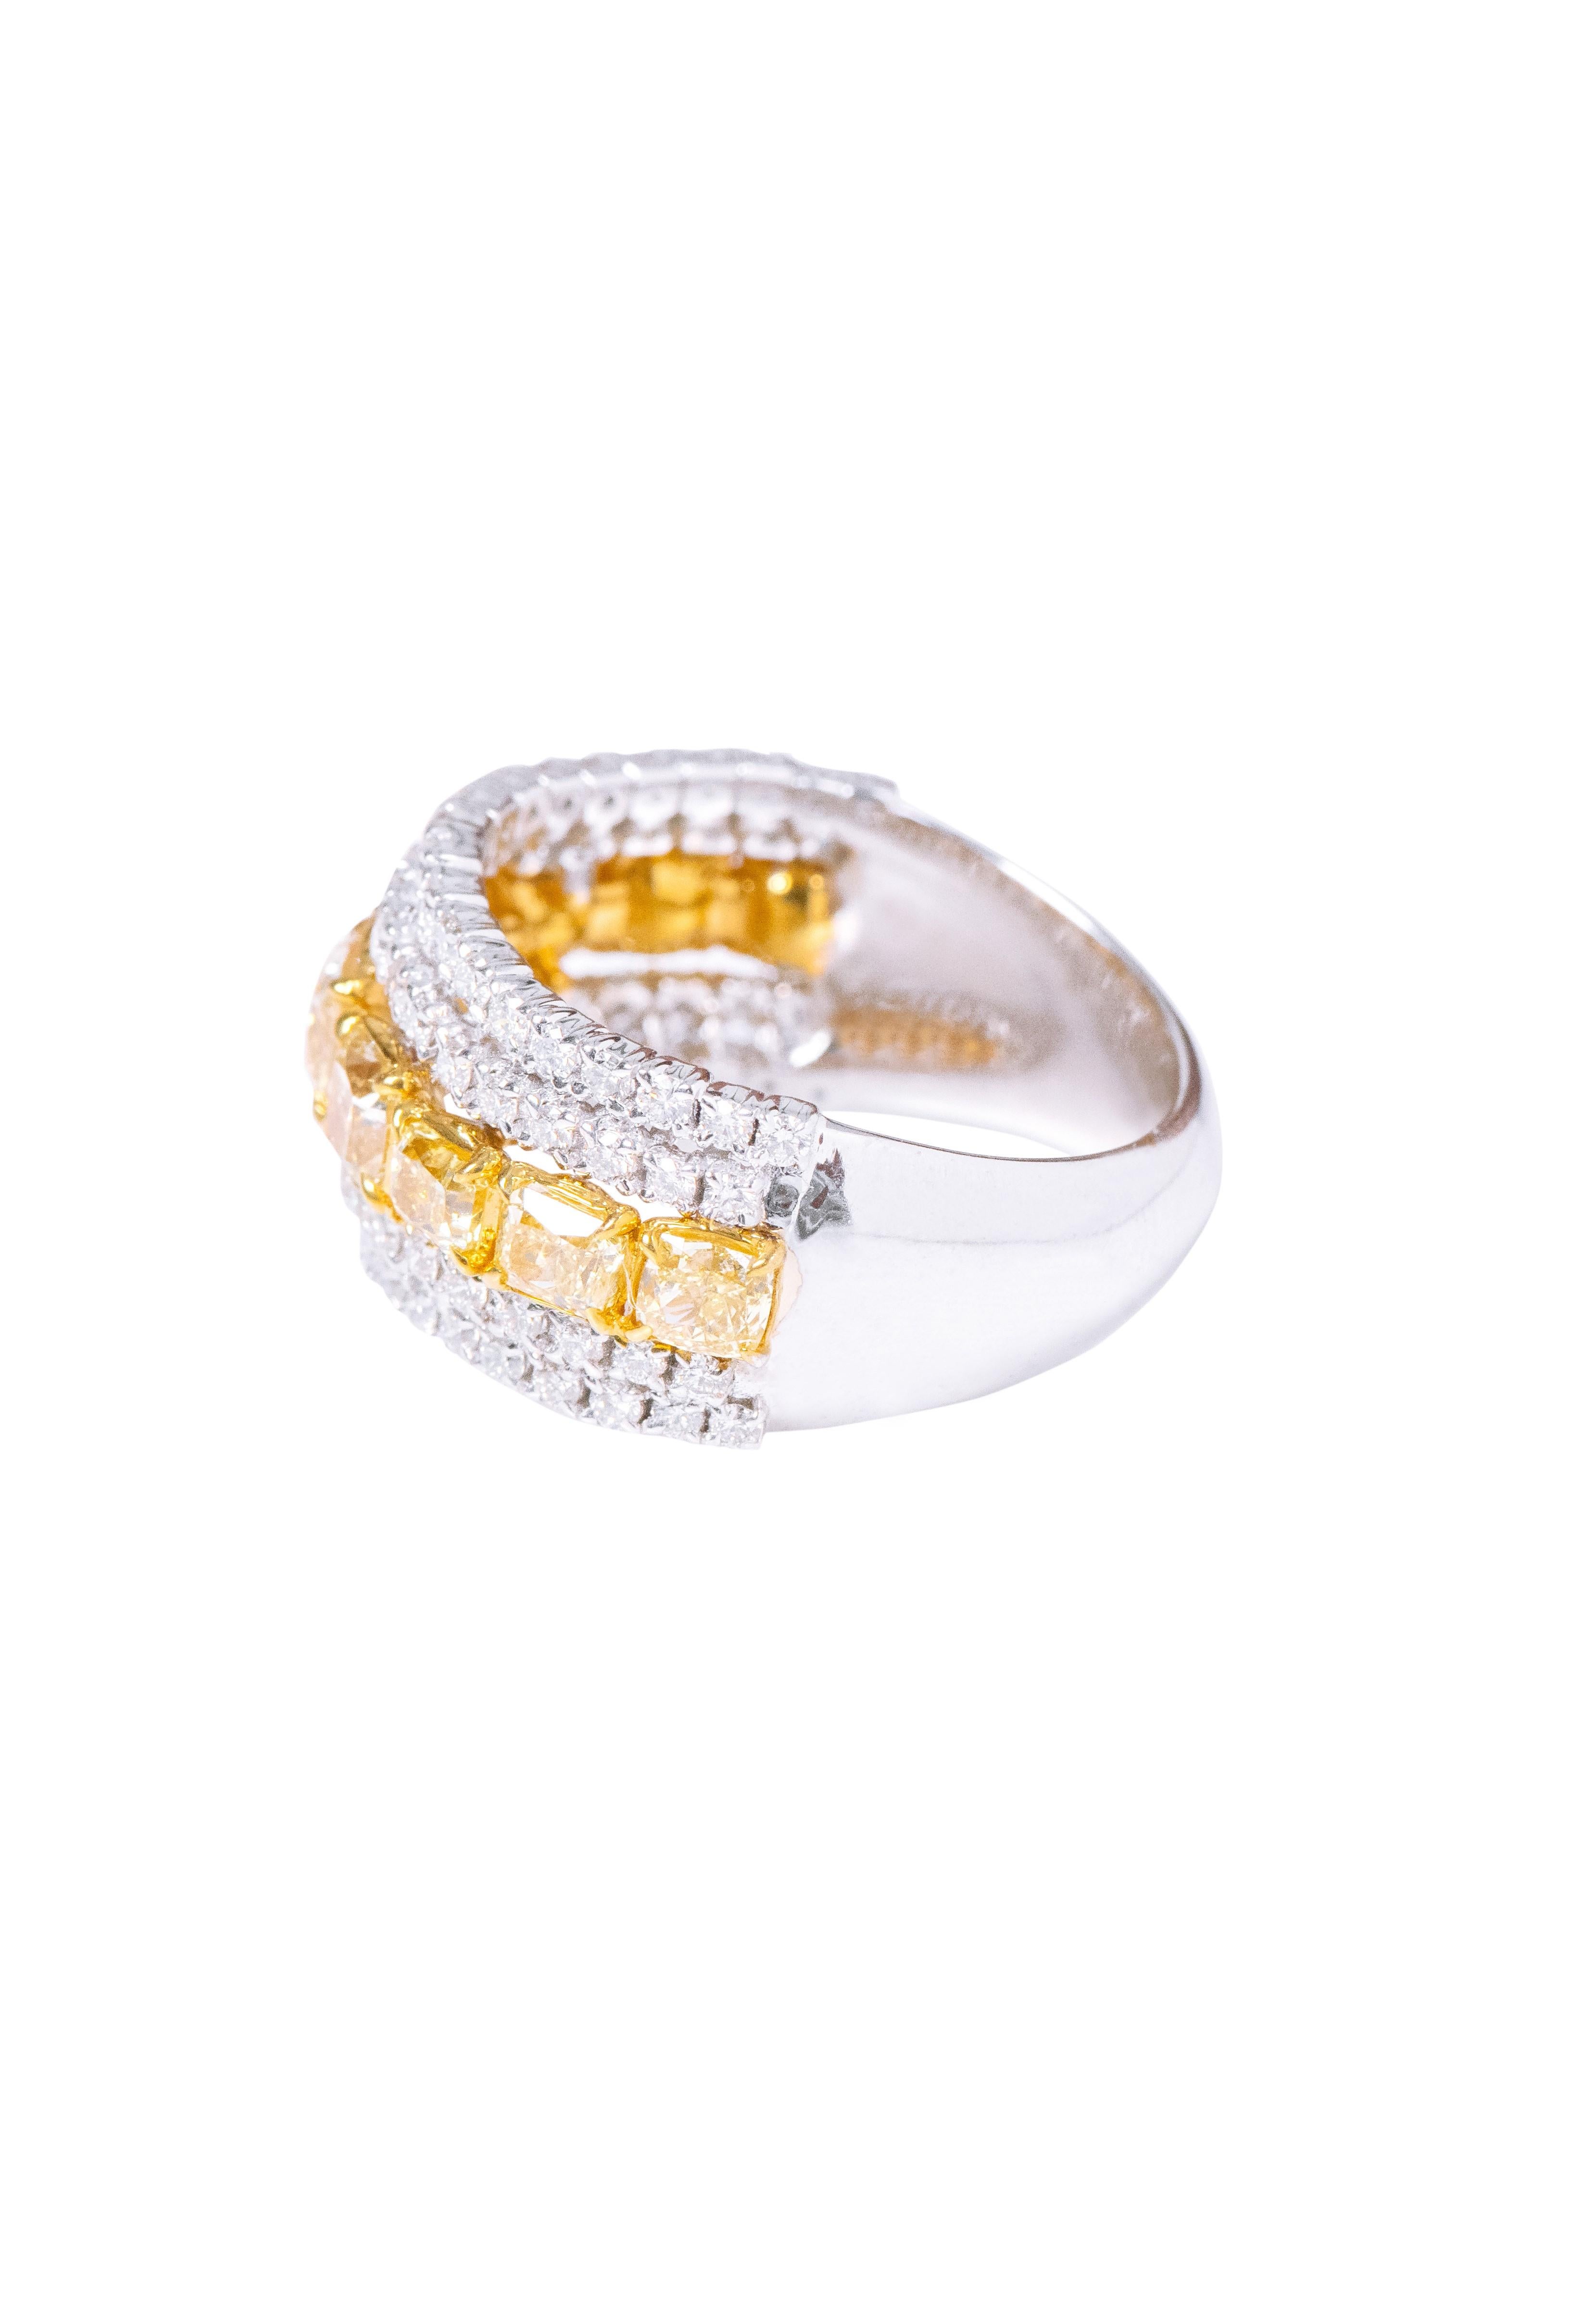 Erhöhen Sie Ihren Stil mit unserem 18 Karat Gold 2,91 Karat Fancy Yellow Diamond and Diamond Fashion Ring - eine wahre Verkörperung von Raffinesse und modernem Design. Jeder Ring ist ein Meisterwerk, das mit größter Sorgfalt gefertigt und